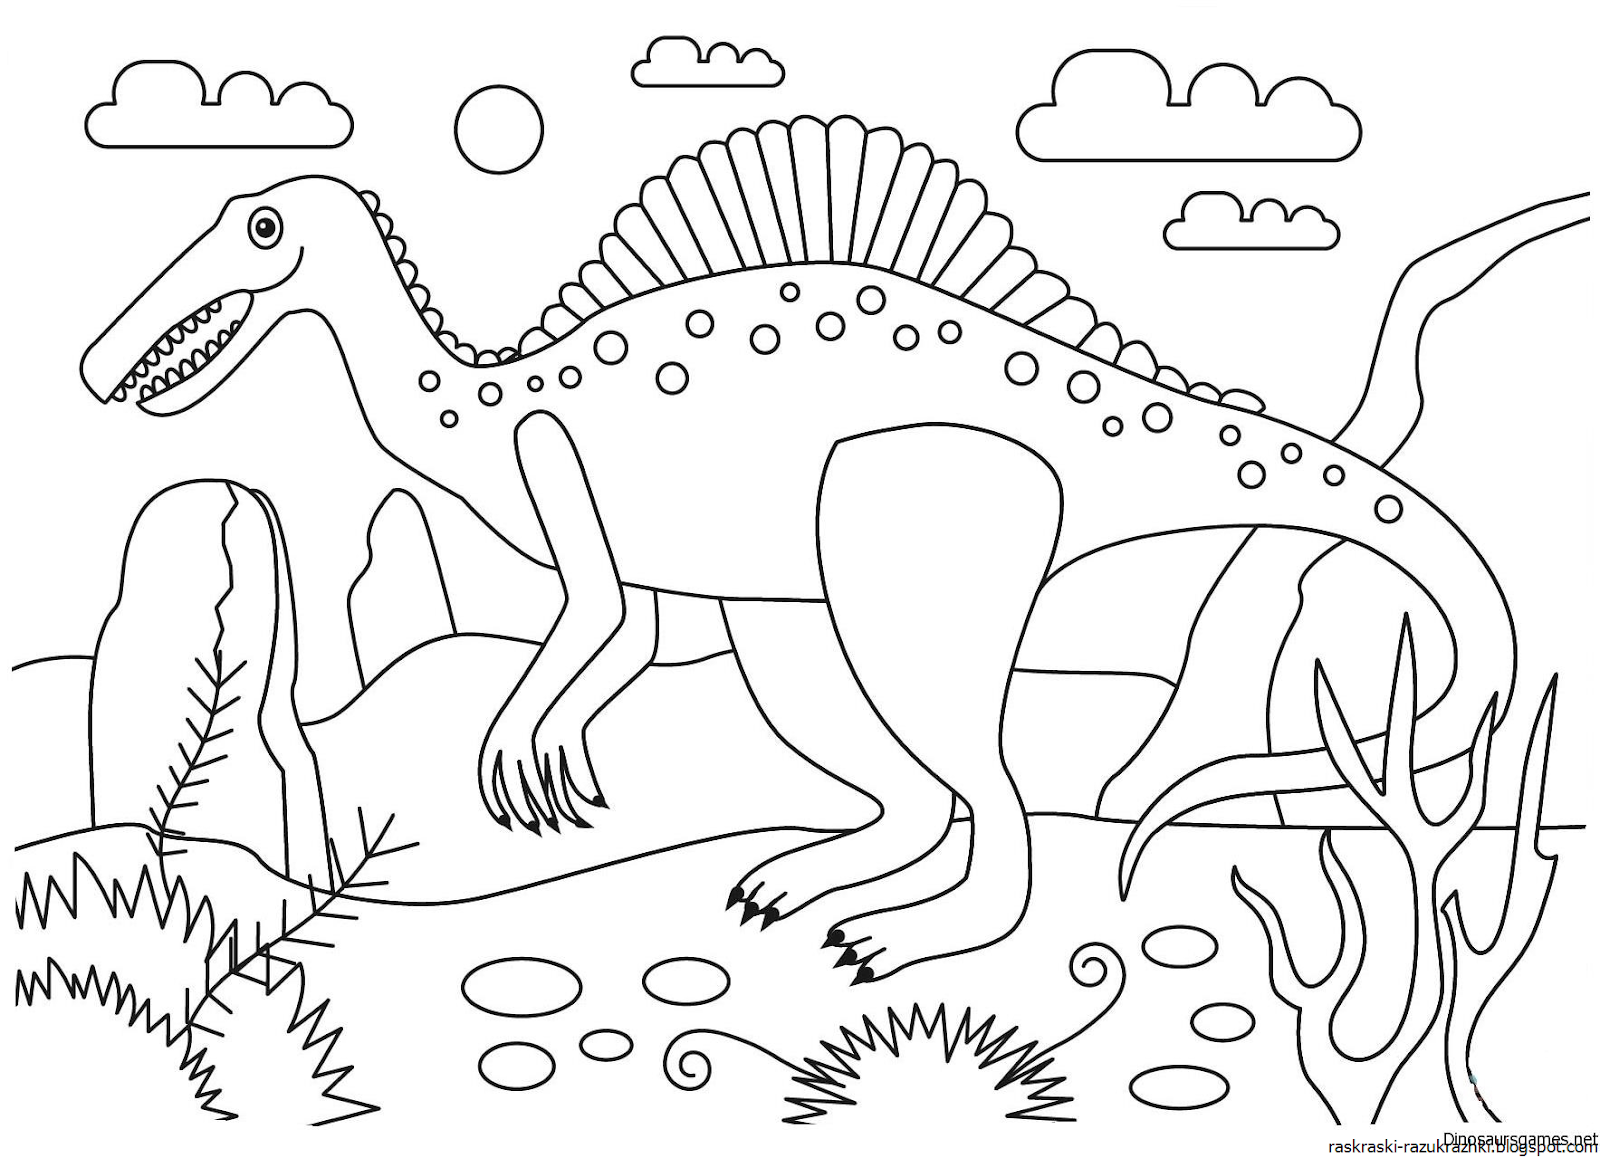 Раскраски динозавры а4. Спинозавр раскраска. Динозавры / раскраска. Динозавр раскраска для детей. Динозавры для раскрашивания детям.